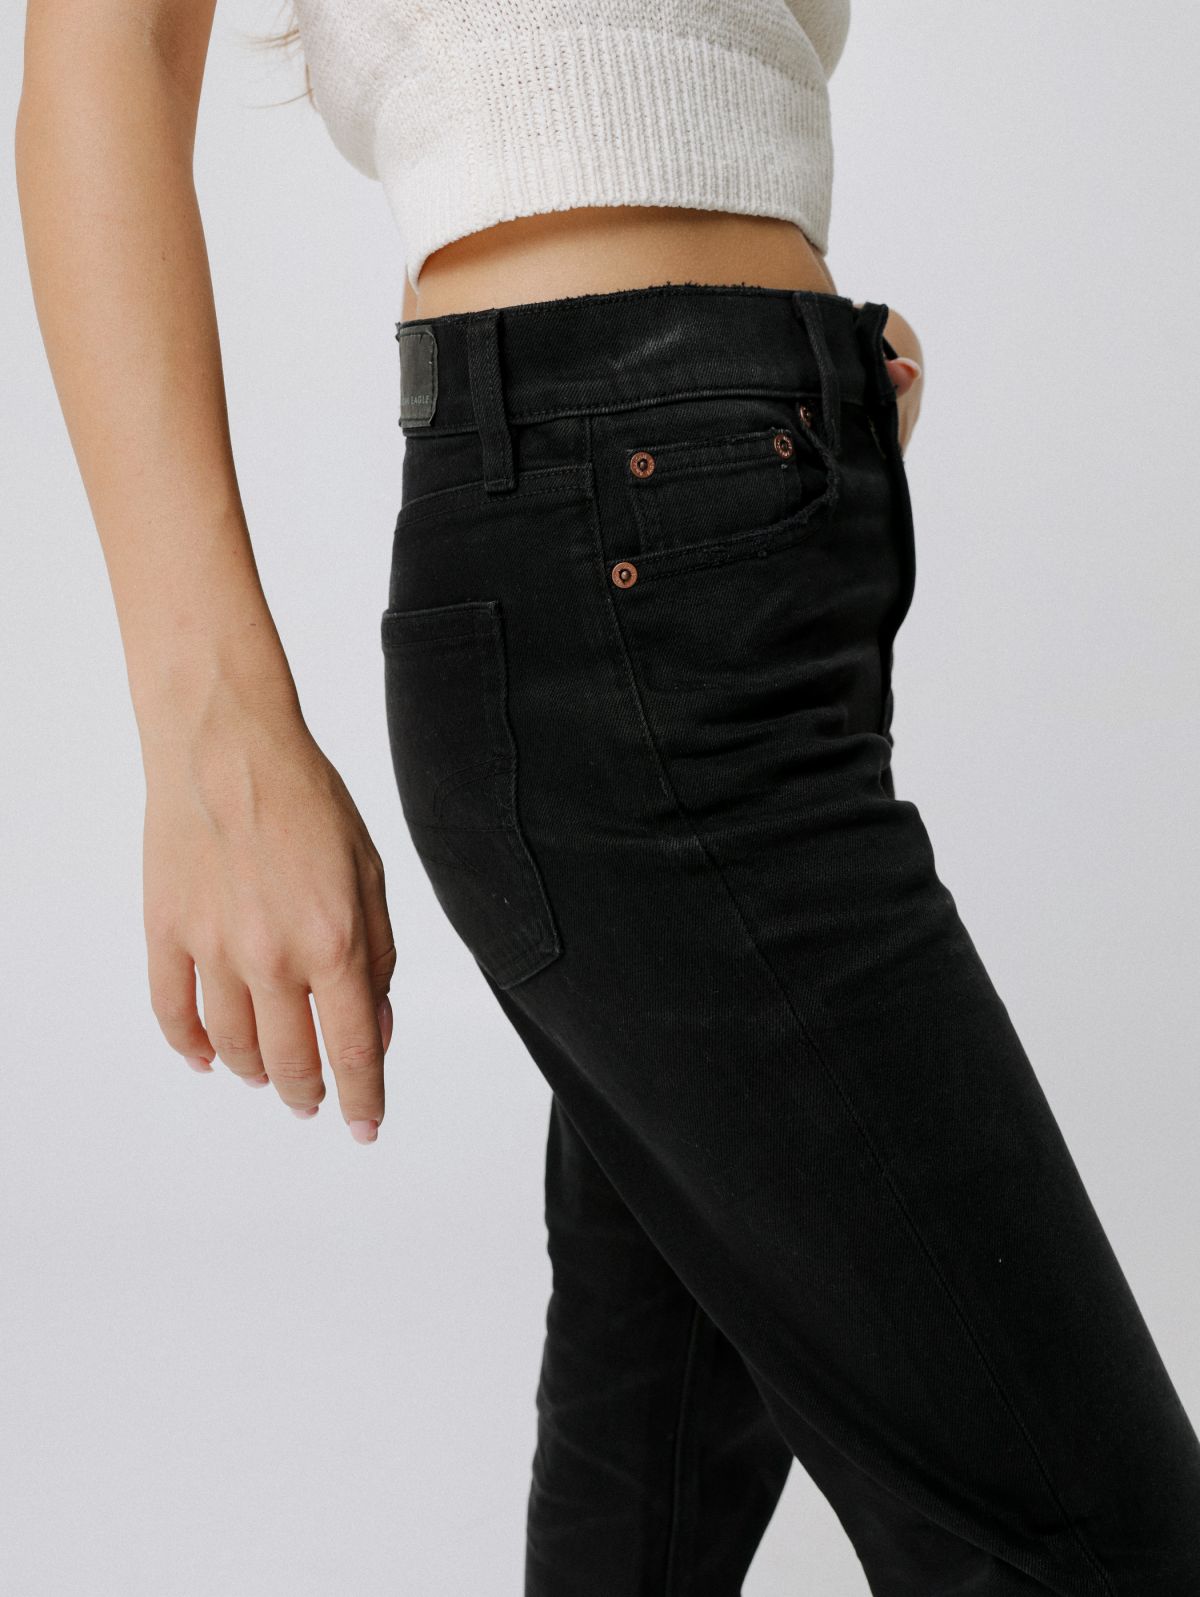  מכנסי ג'ינס בגזרה ישרה של AMERICAN EAGLE